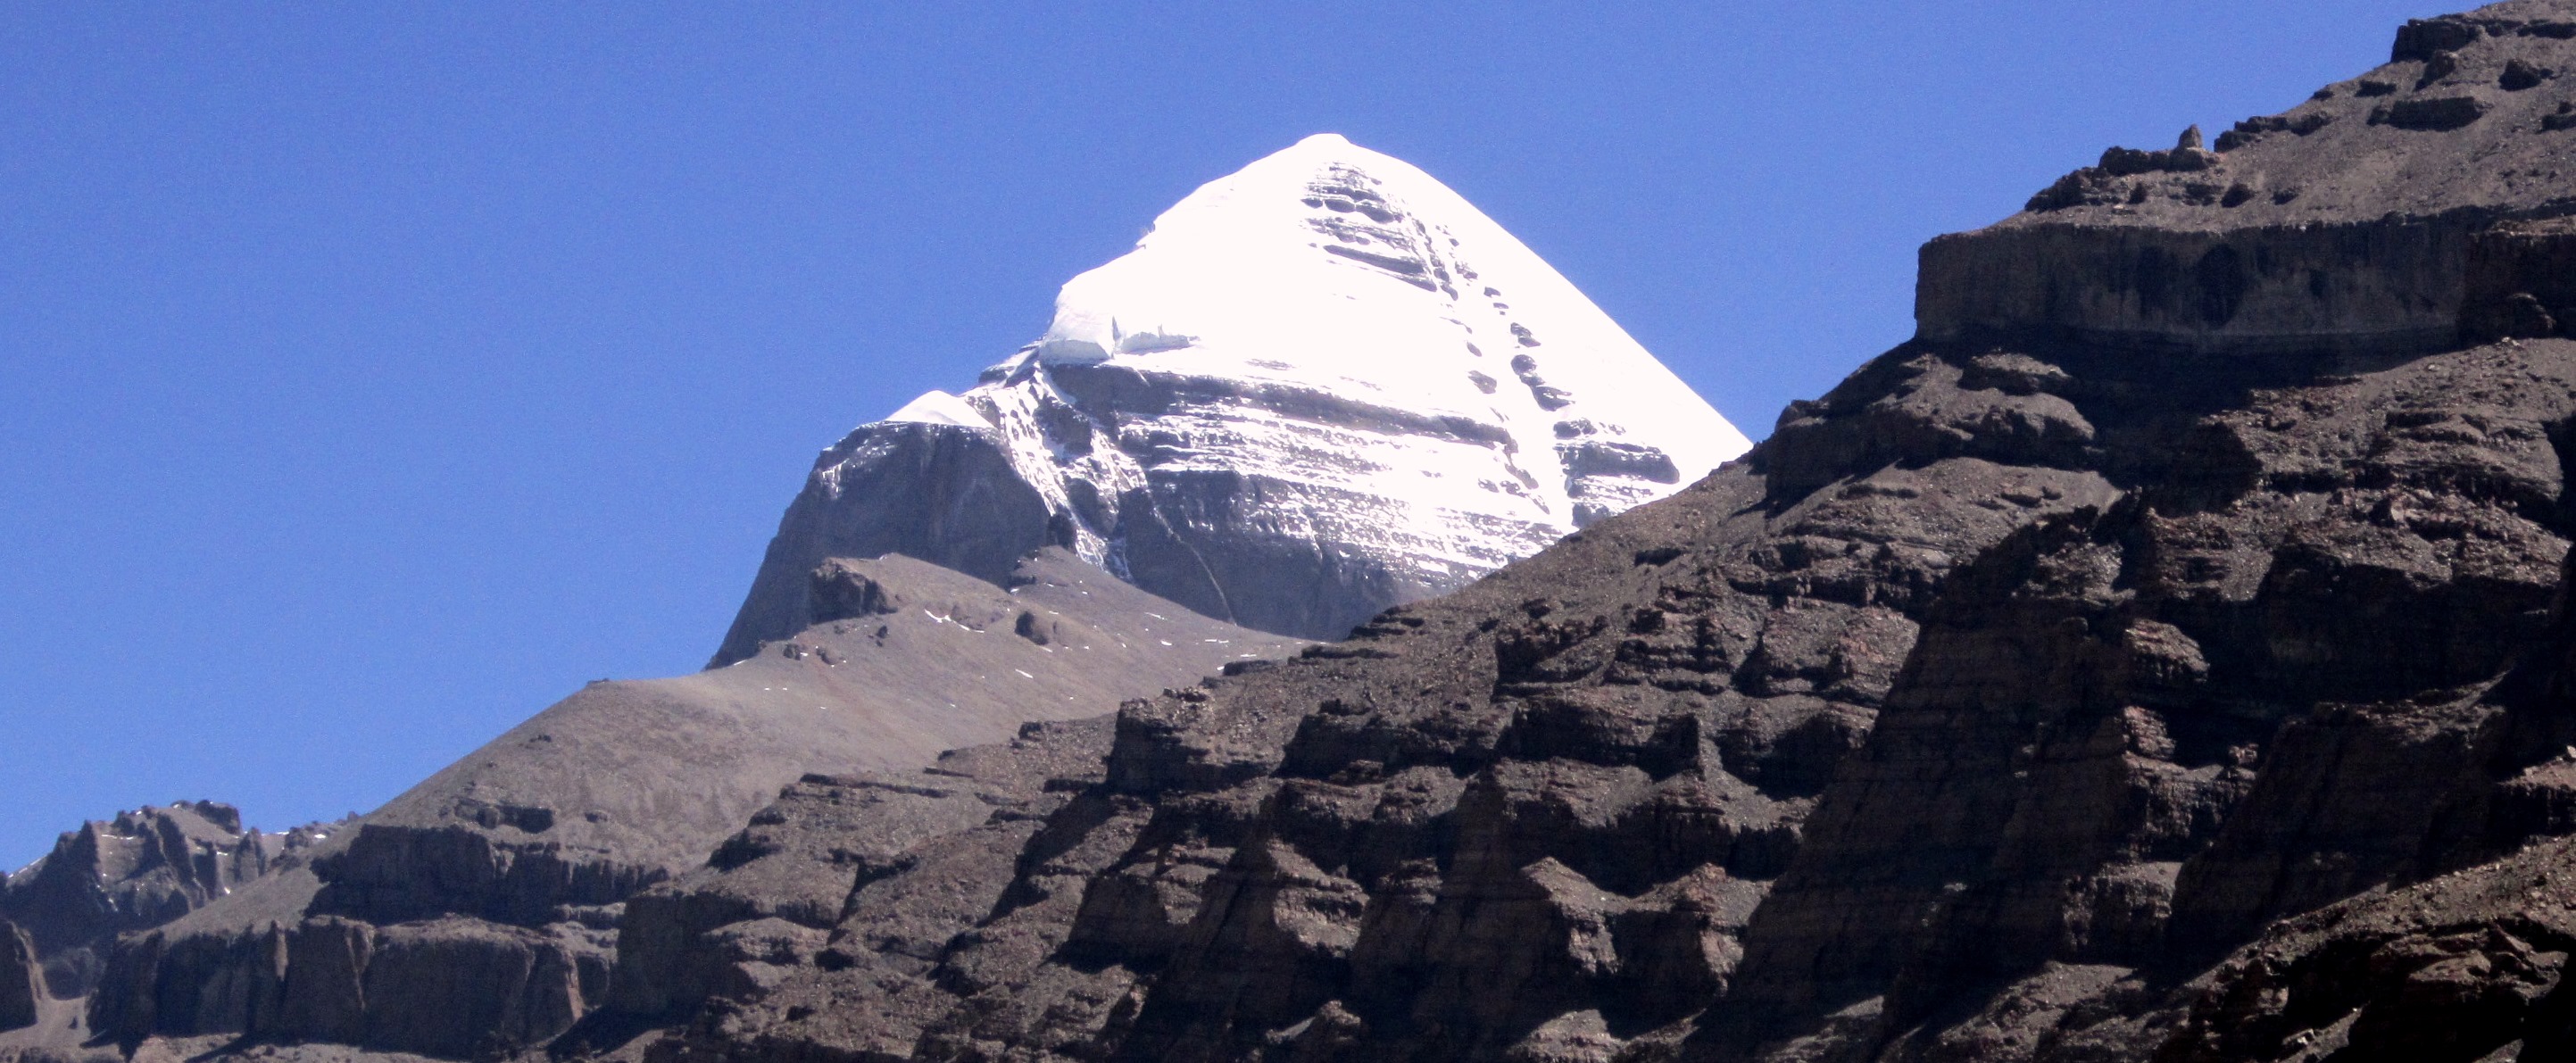 Mt Kailash 6714m